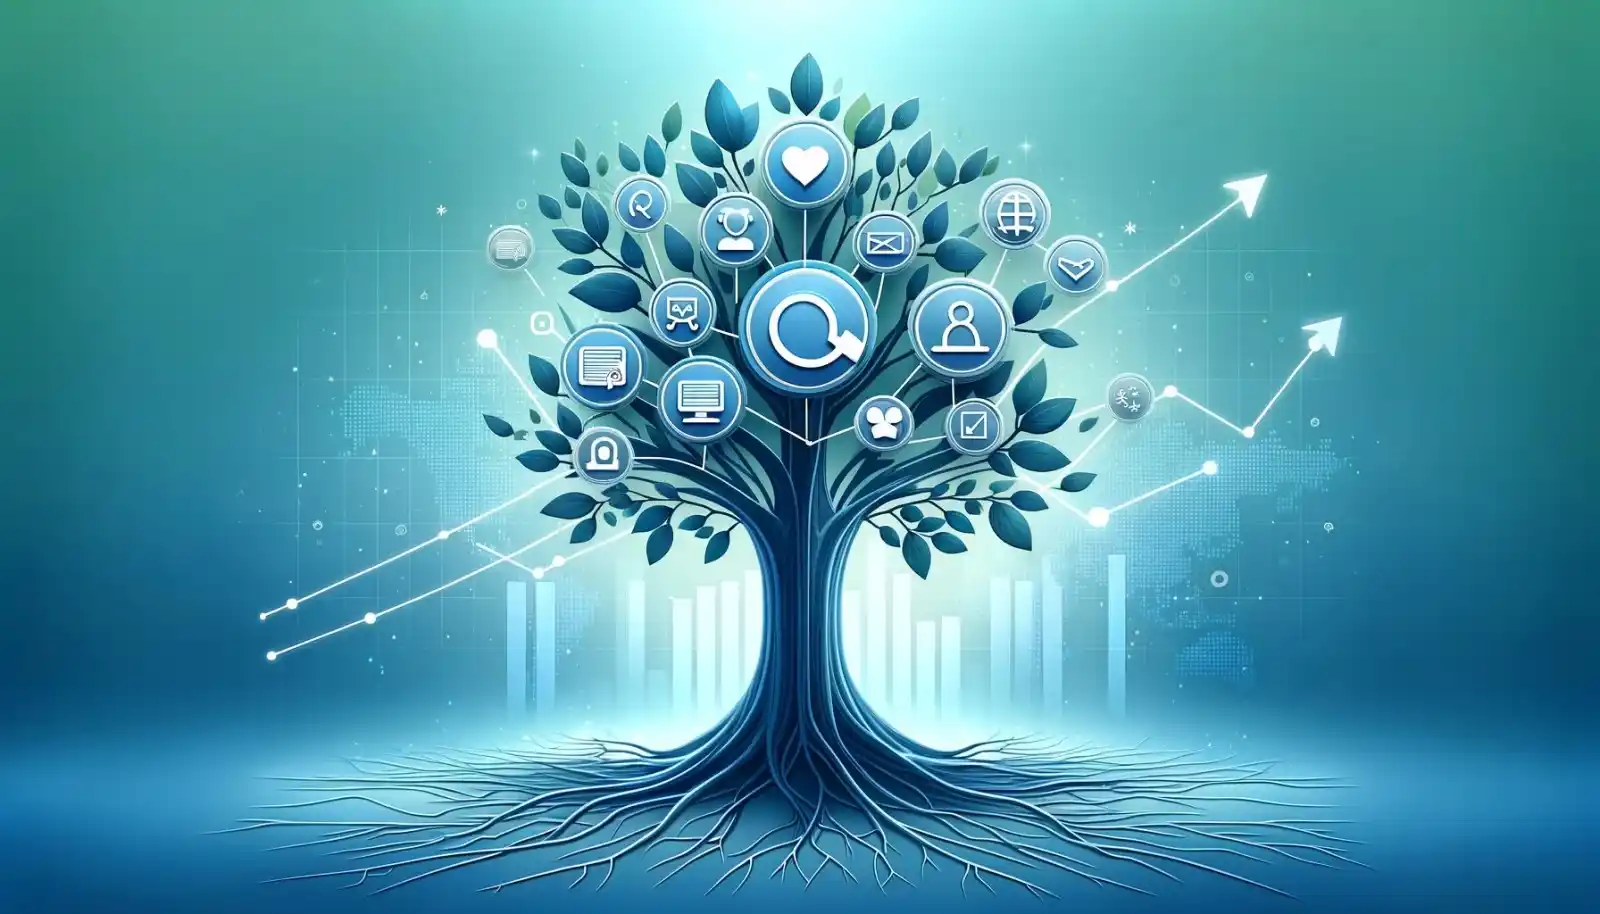 imagen figurativa de árbol que representa a una empresa que elige servicios seo para crecer